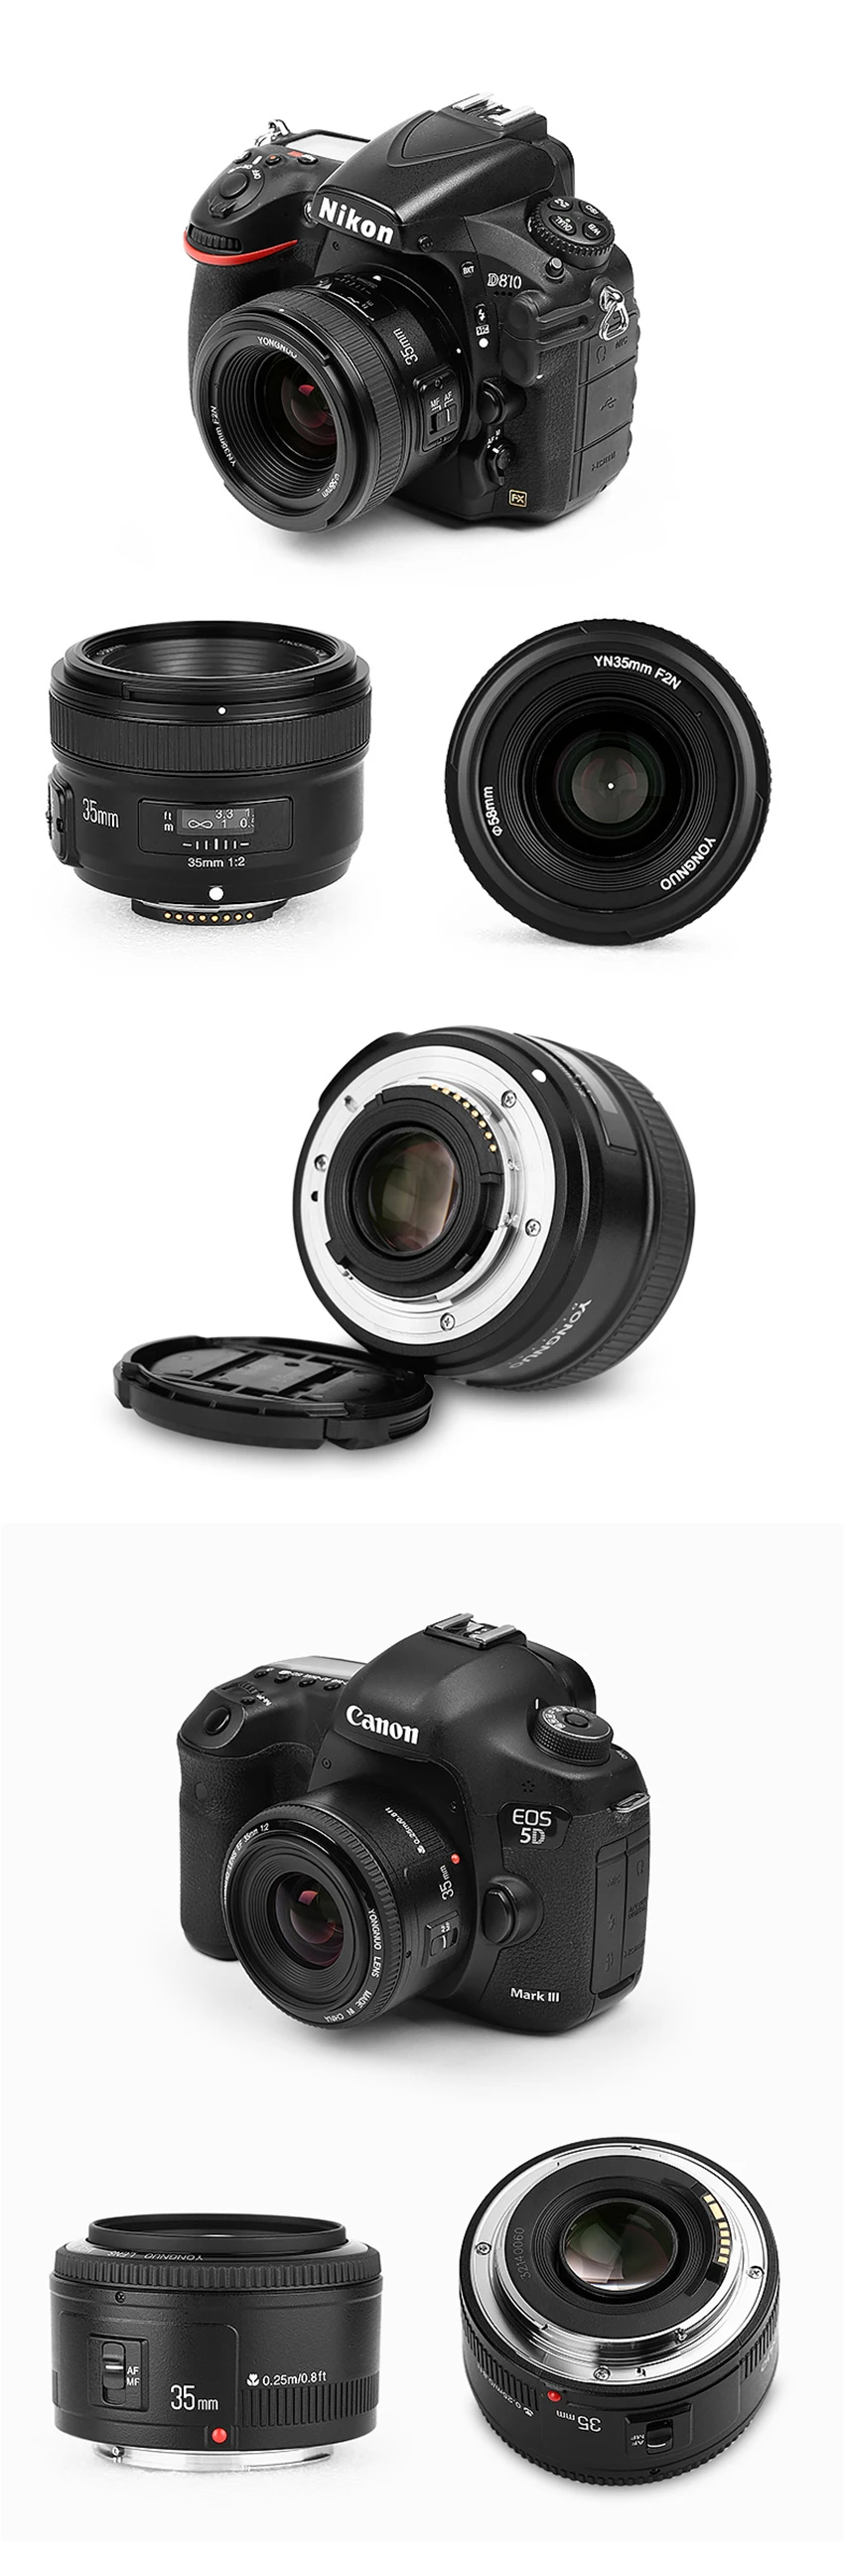 YONGNUO YN 35 мм F2 объектив камеры для Nikon Canon EOS YN35MM объективы AF MF широкоугольный объектив для 600D 60D 5DII 5D 500D 400D 650D 6